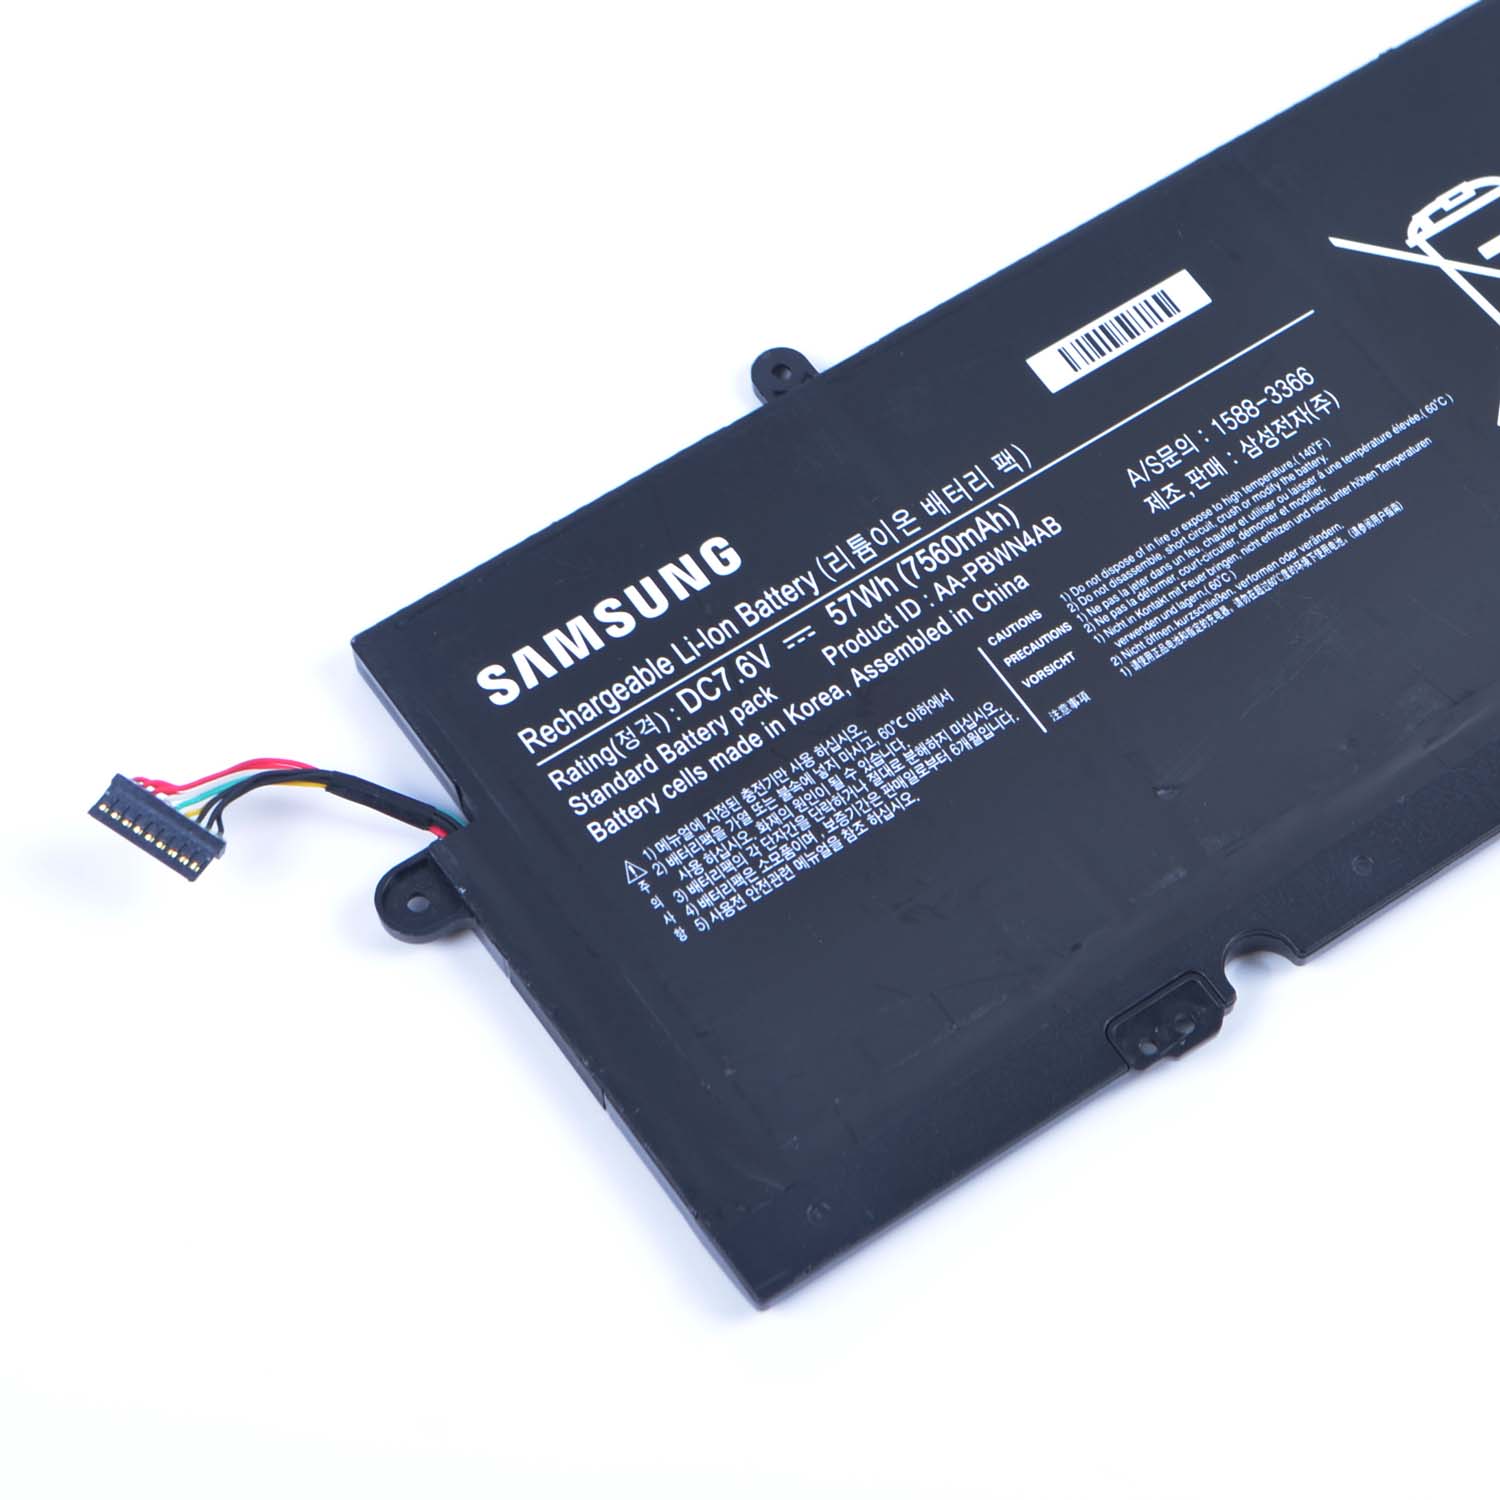 Samsung Samsung 740U3E-S02DE battery